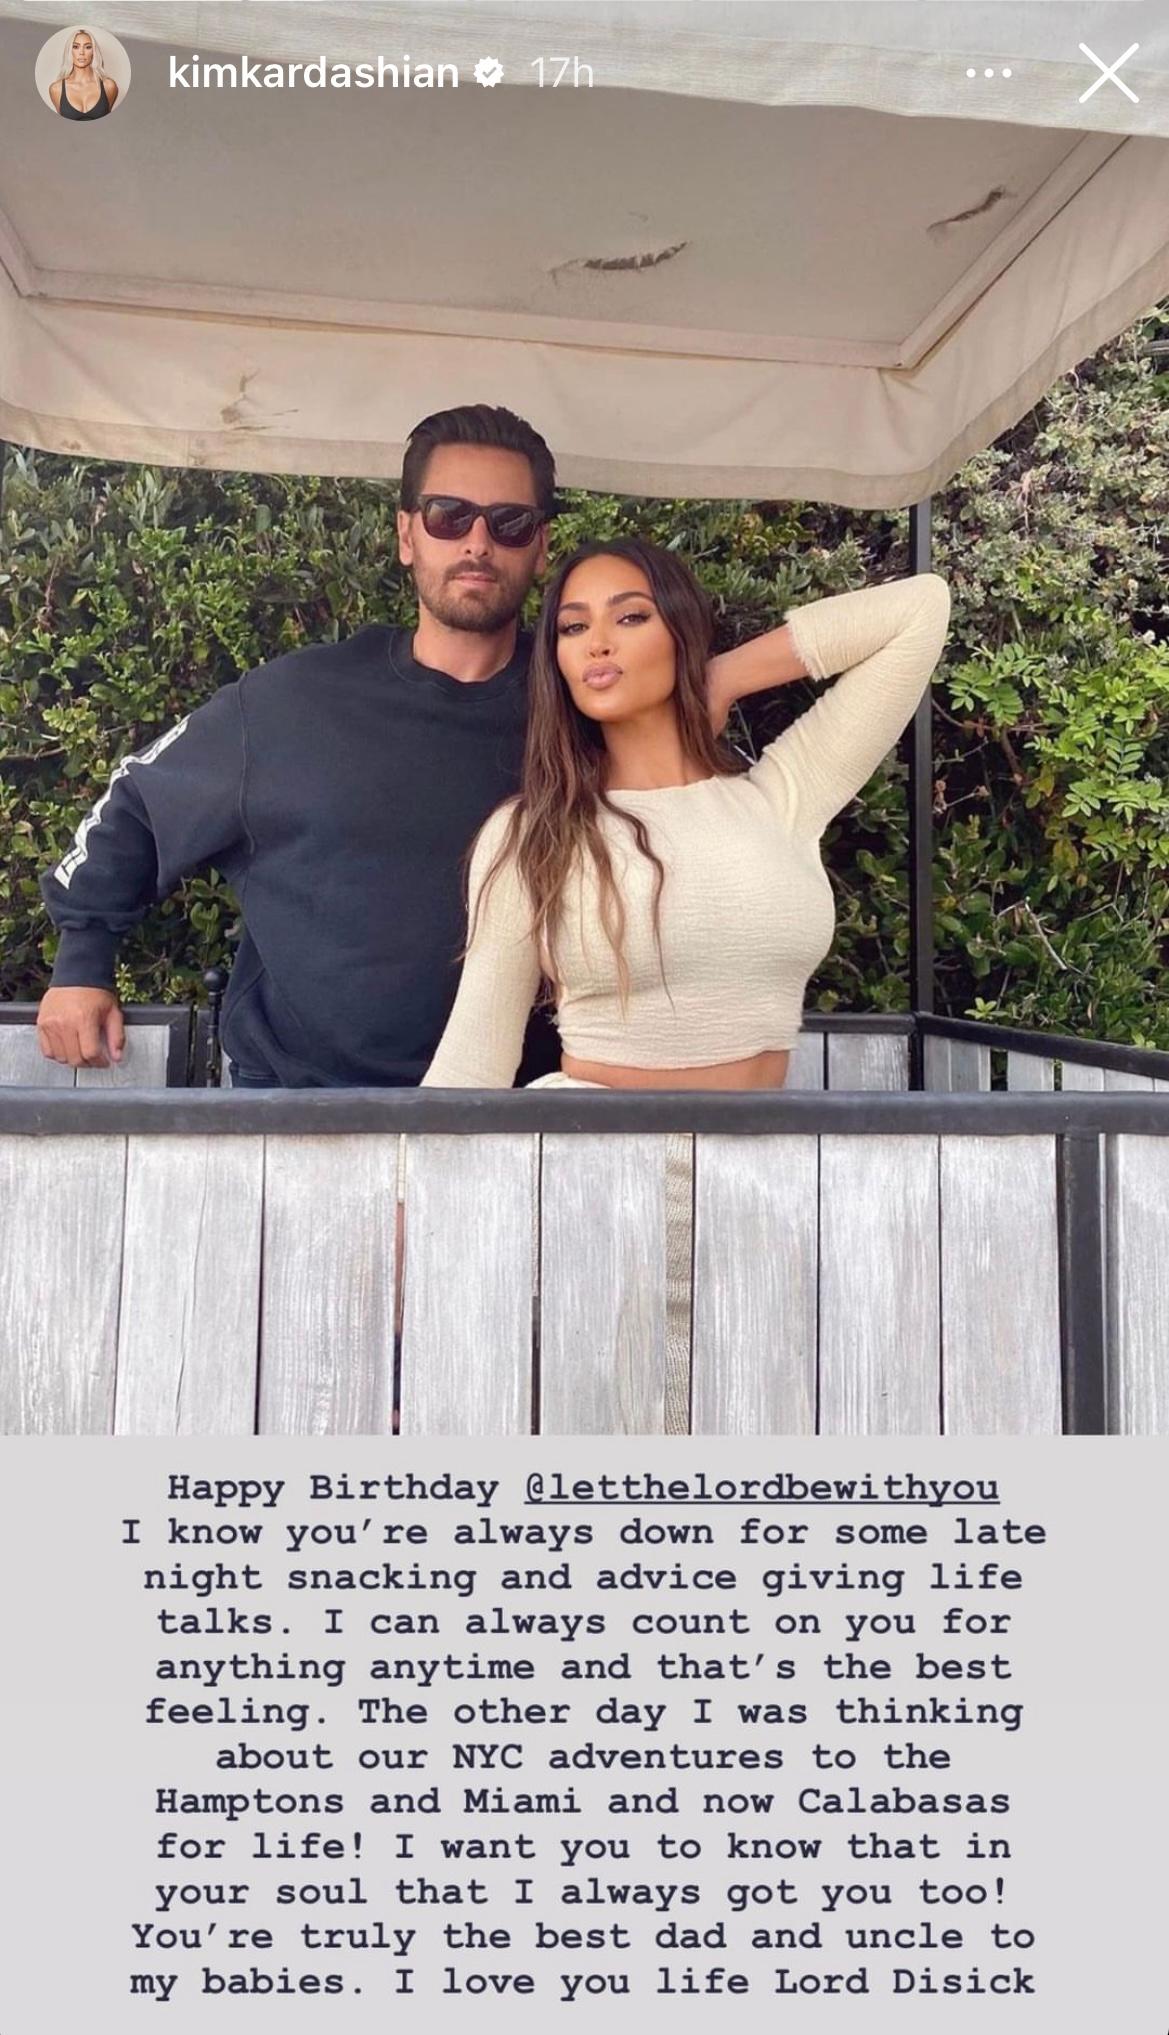 Kim Kardashian pays tribute to Scott Disick on birthday